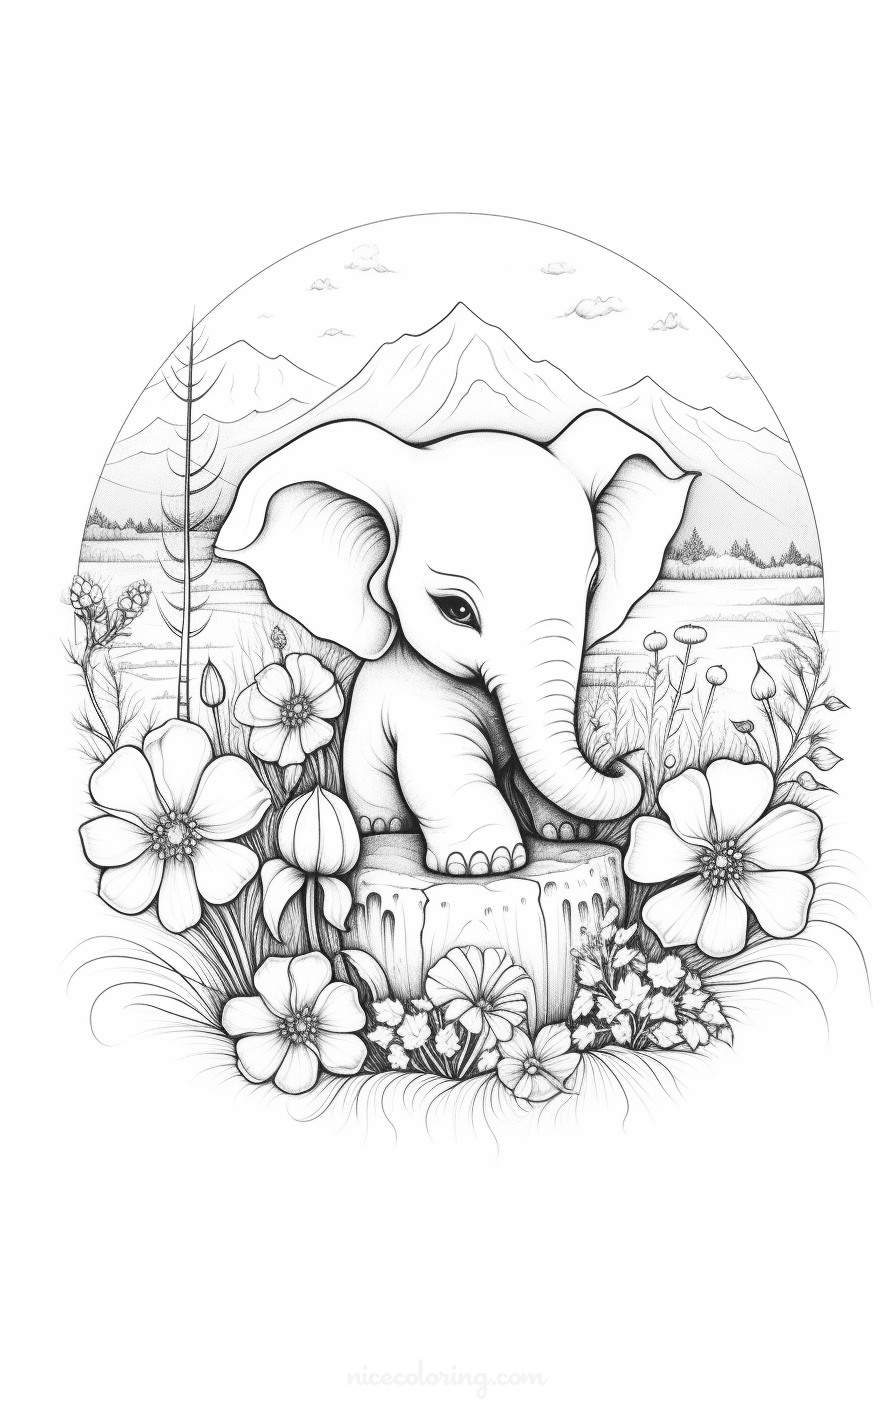 صفحة تلوين لعائلة فيلة تستريح تحت شجرة